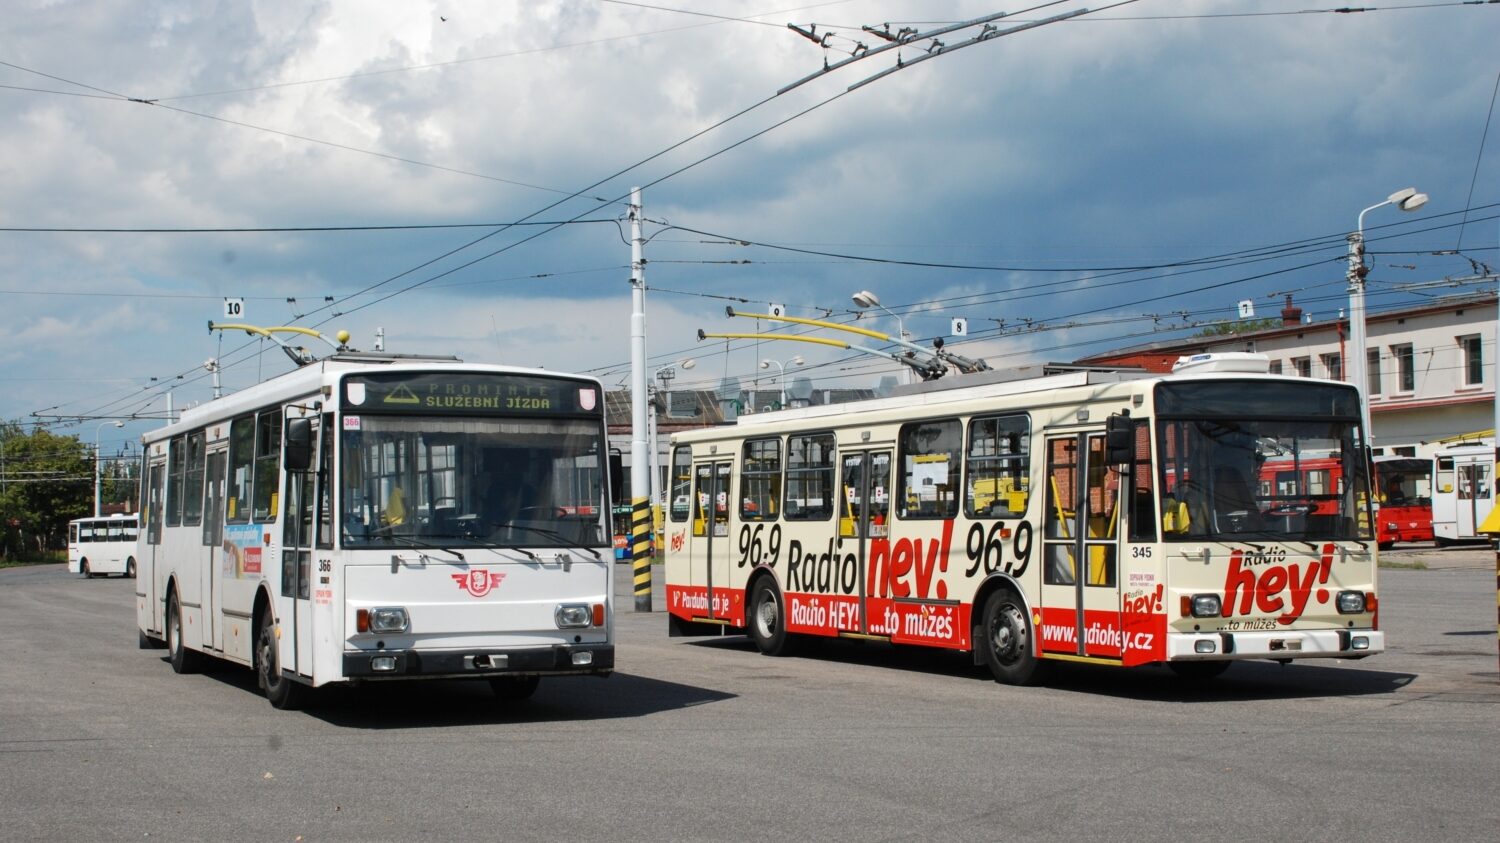 Trolejbus Škoda 14 TrM ev. č. 366 z roku 1995 pózuje vedle vozu 14 Tr ev. č. 345 s novou karoserií na nádvoří pardubické vozovny v červnu 2009. Zatímco vůz ev. č. 366 byl vyřazen po nehodě v roce 2012, jeho soused z fotografie bude kapitolu provozu trolejbusů 14 Tr v Pardubicích příští týden uzavírat. (foto: Libor Hinčica)